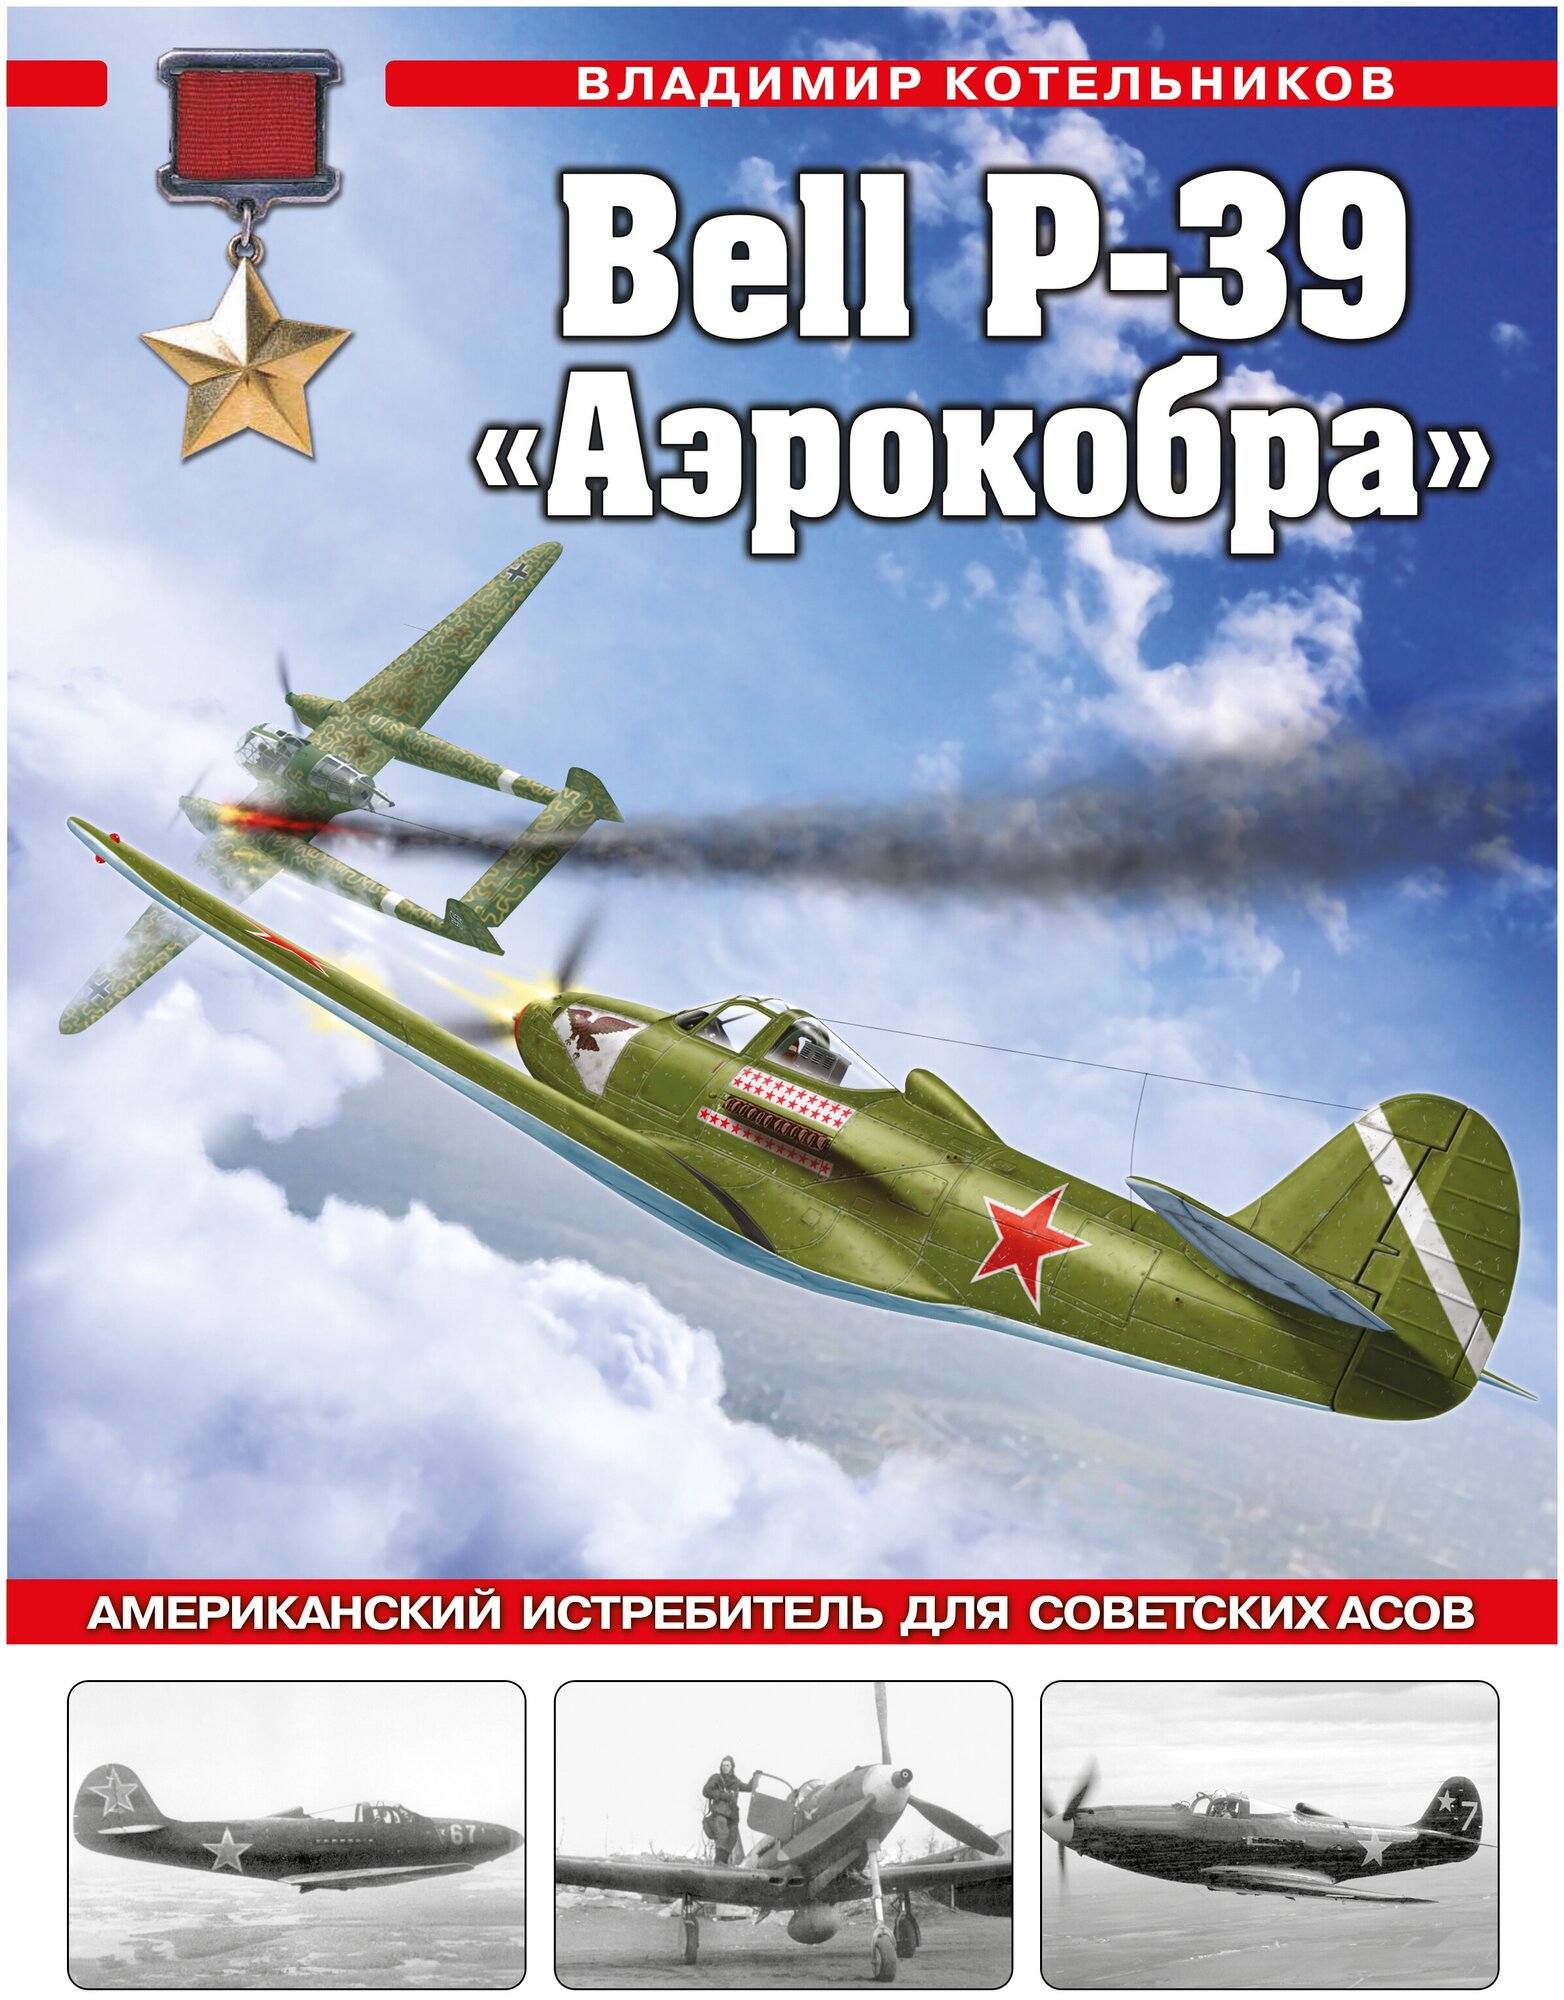 Bell P-39 «Аэрокобра». Американский истребитель для советских асов - фото №1